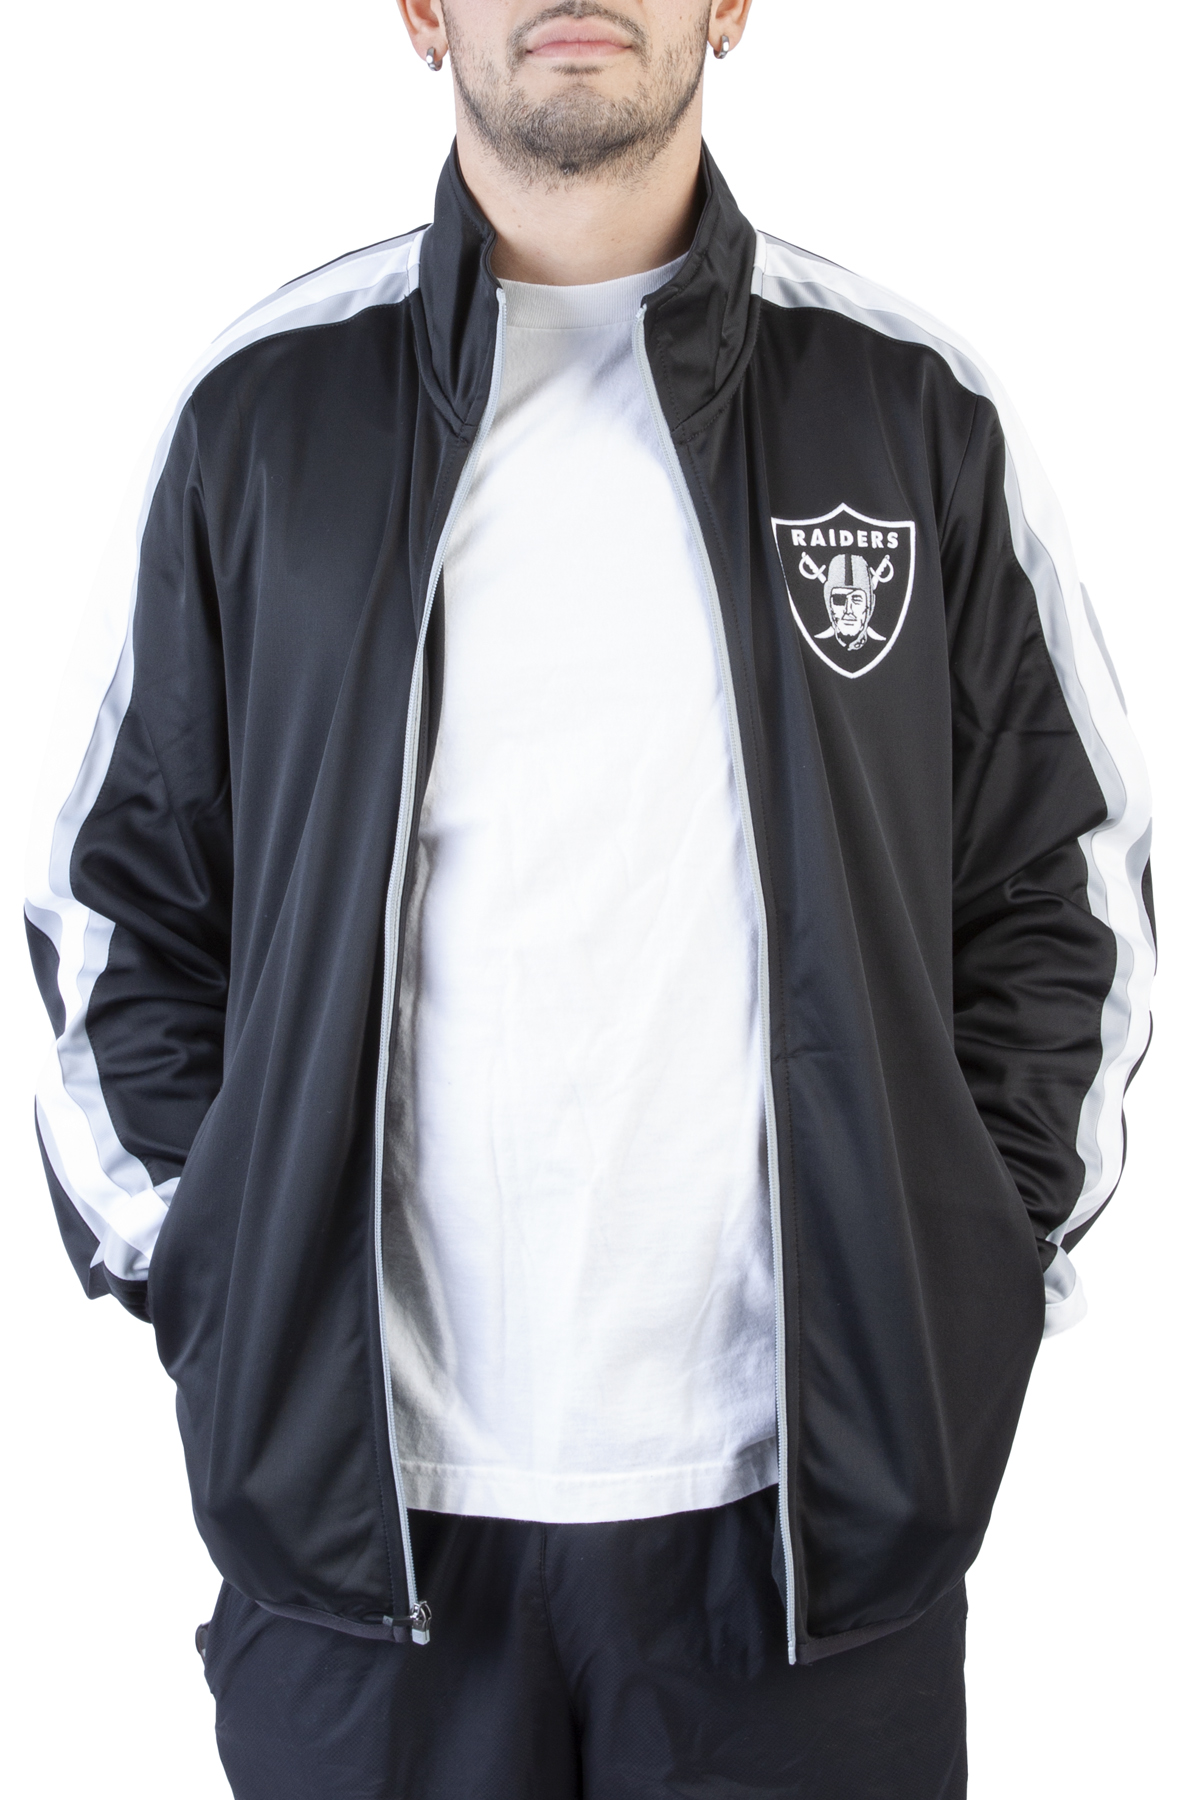 New Era Las Vegas Raiders Women's Sleeve Name Full-Zip Hoodie Sweatshirt 22 / L